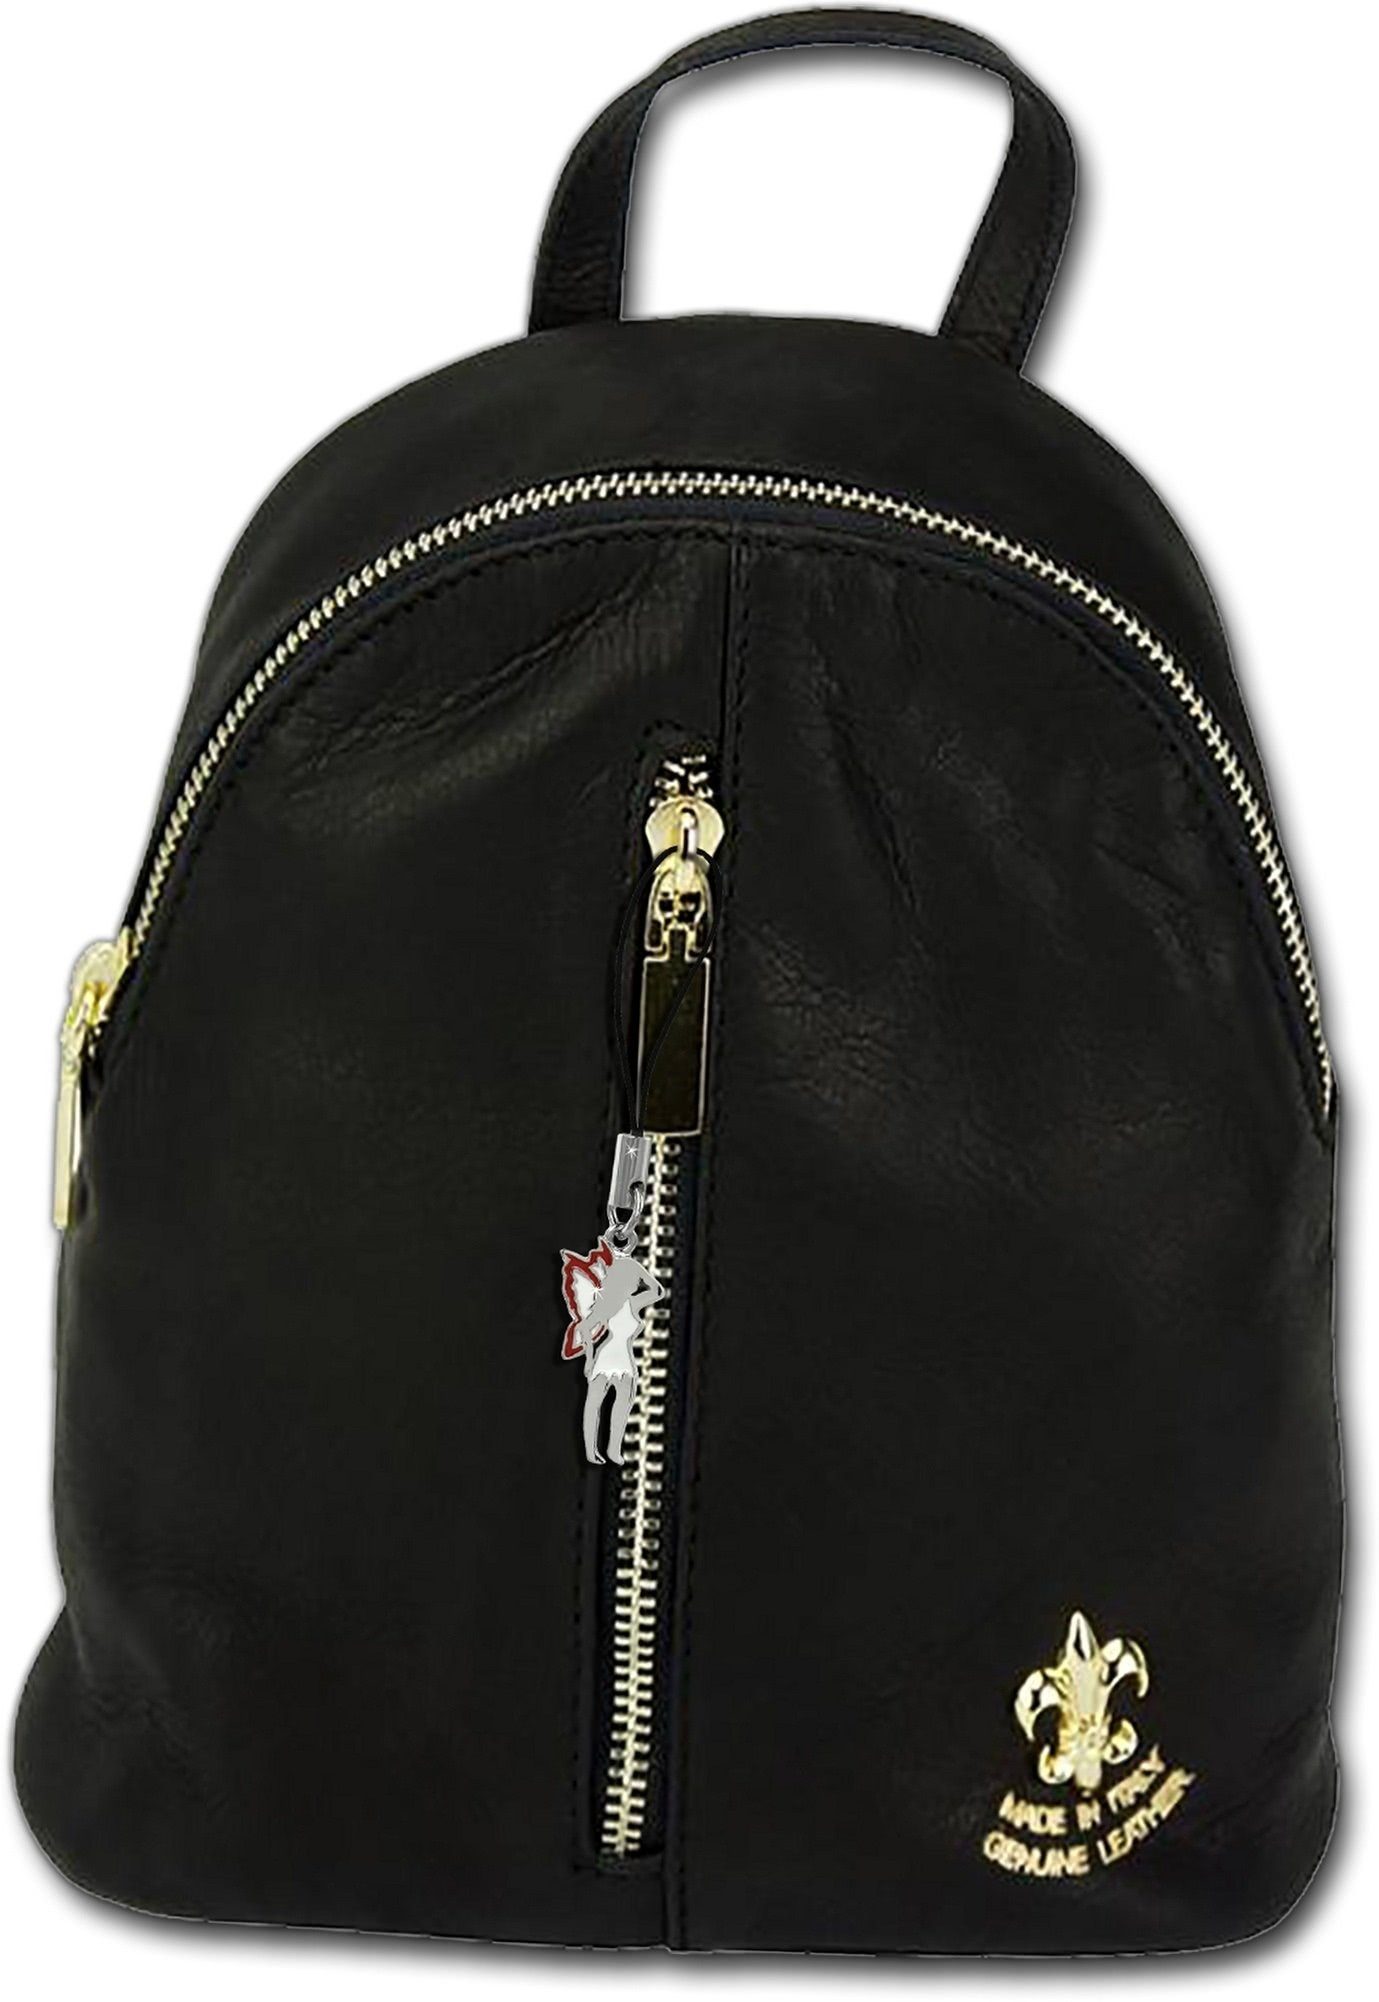 FLORENCE Cityrucksack »D2Florence kleiner schwarzer 2in1 Rucksack«, Damen,  Jugend Rucksack aus Echtleder in schwarz, ca. 21cm Breite, Made-In Italy  online kaufen | OTTO